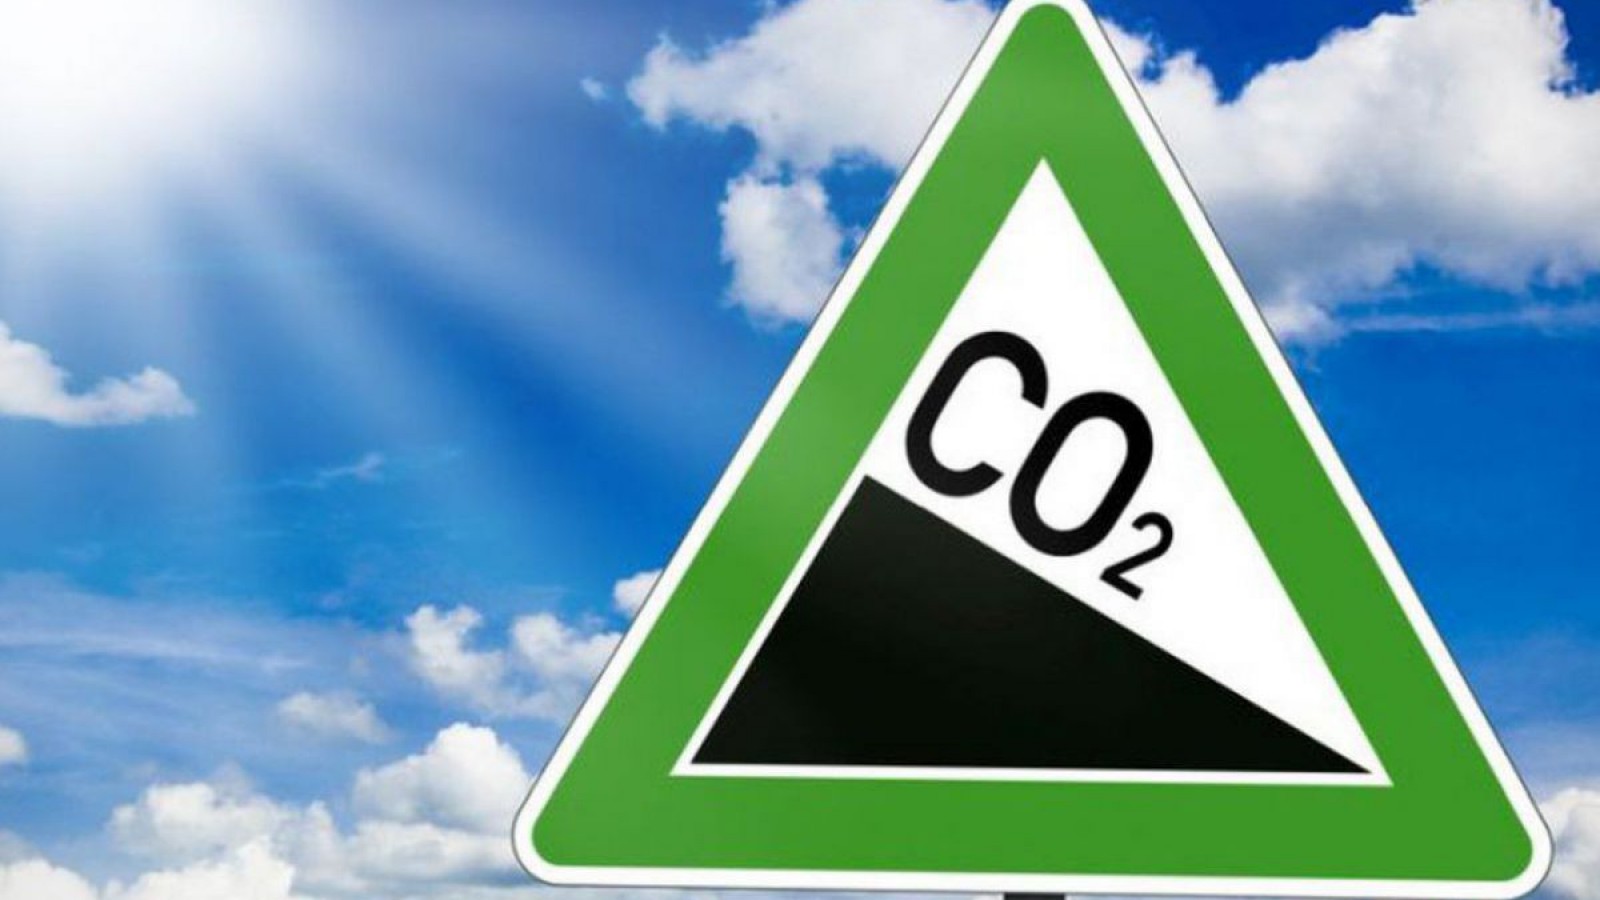 Bild mit sinkenden CO2-Emissionen